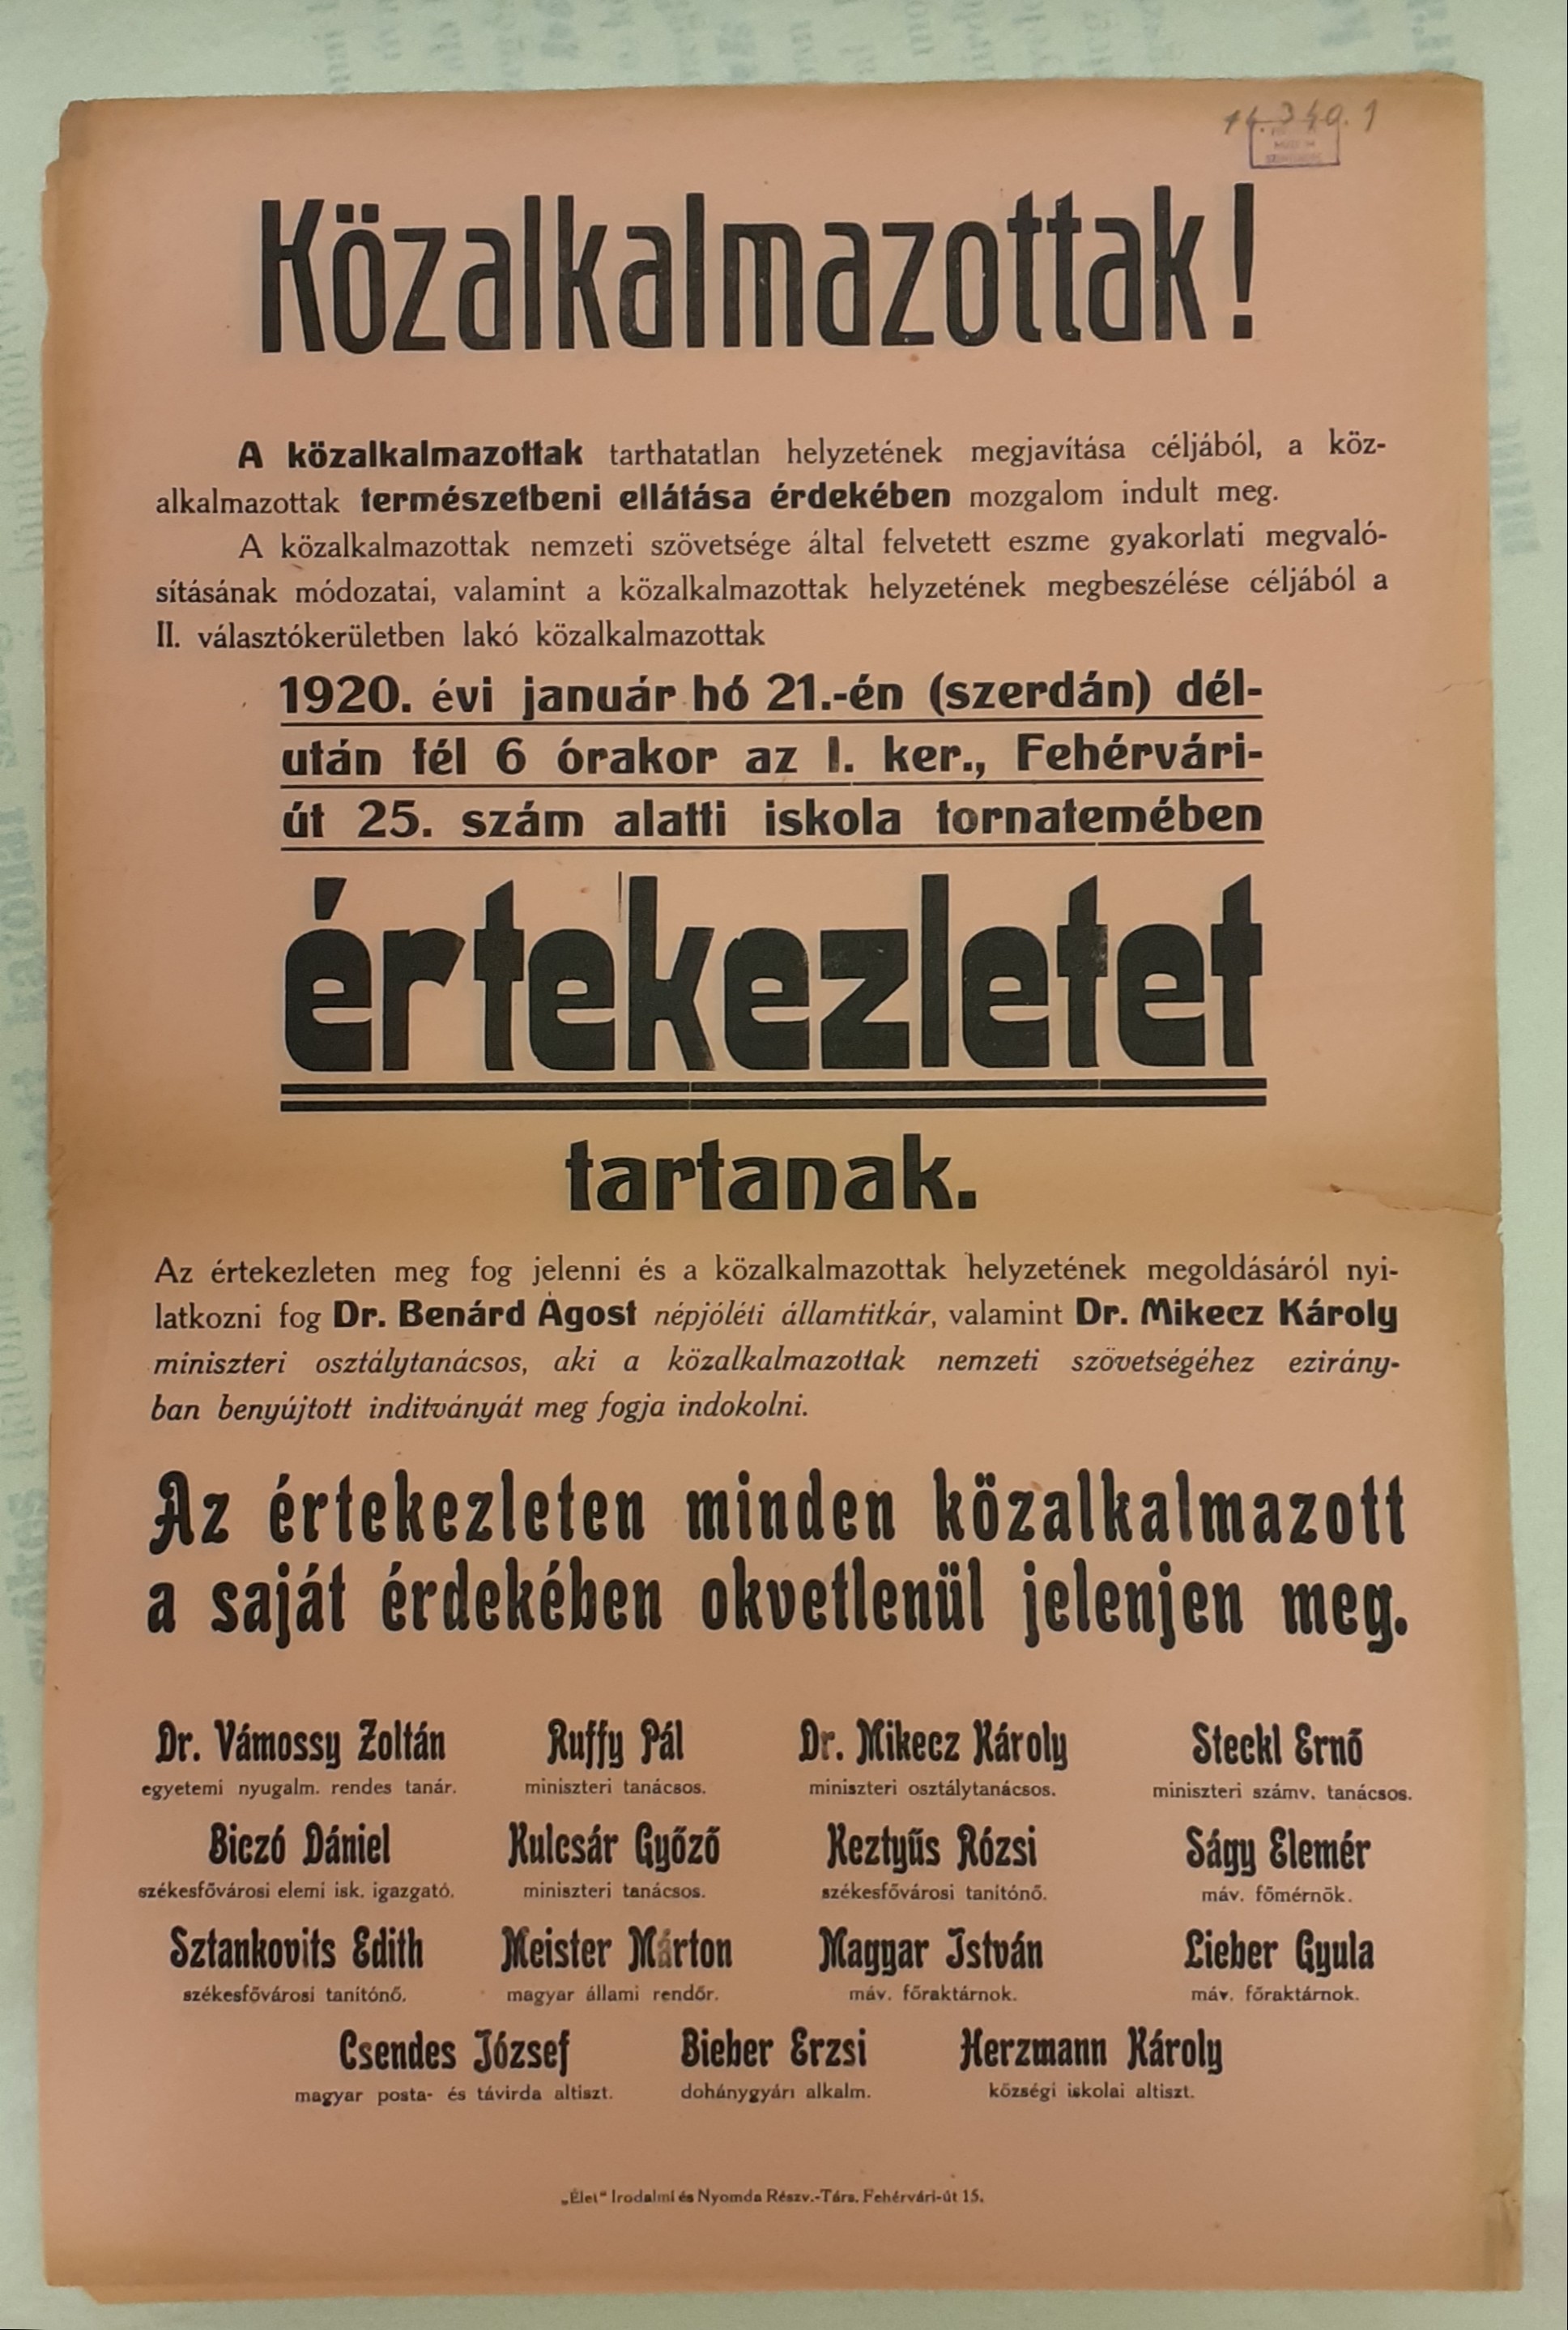 Plakát a közalkalmazottak értekezletéről (1920.01.21.) (Ferenczy Múzeumi Centrum CC BY-NC-SA)